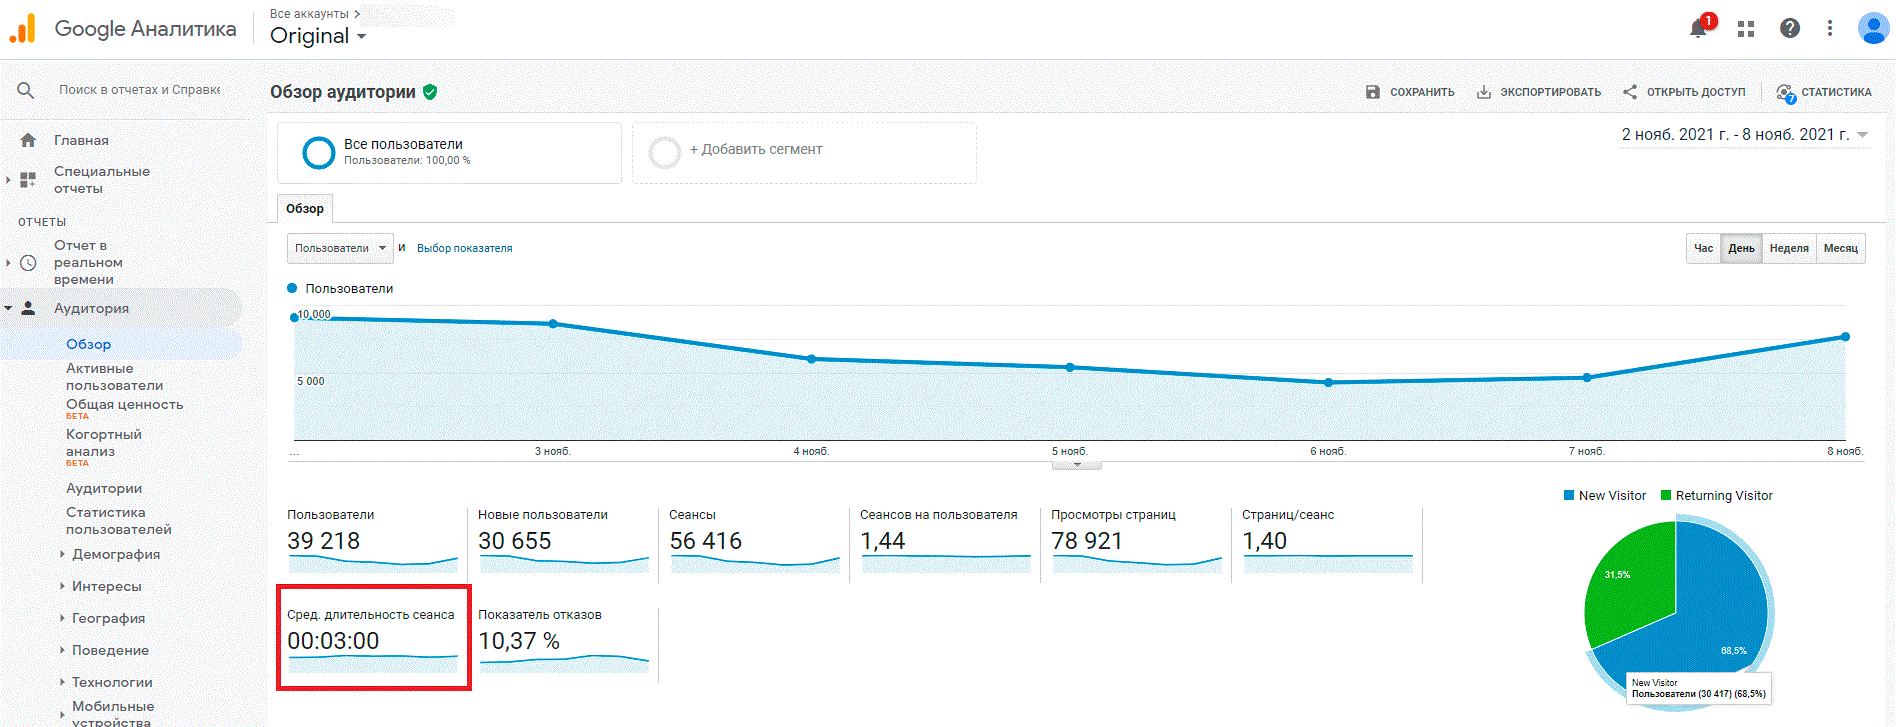 Как посмотреть среднюю длительность сеанса в Google Analytics